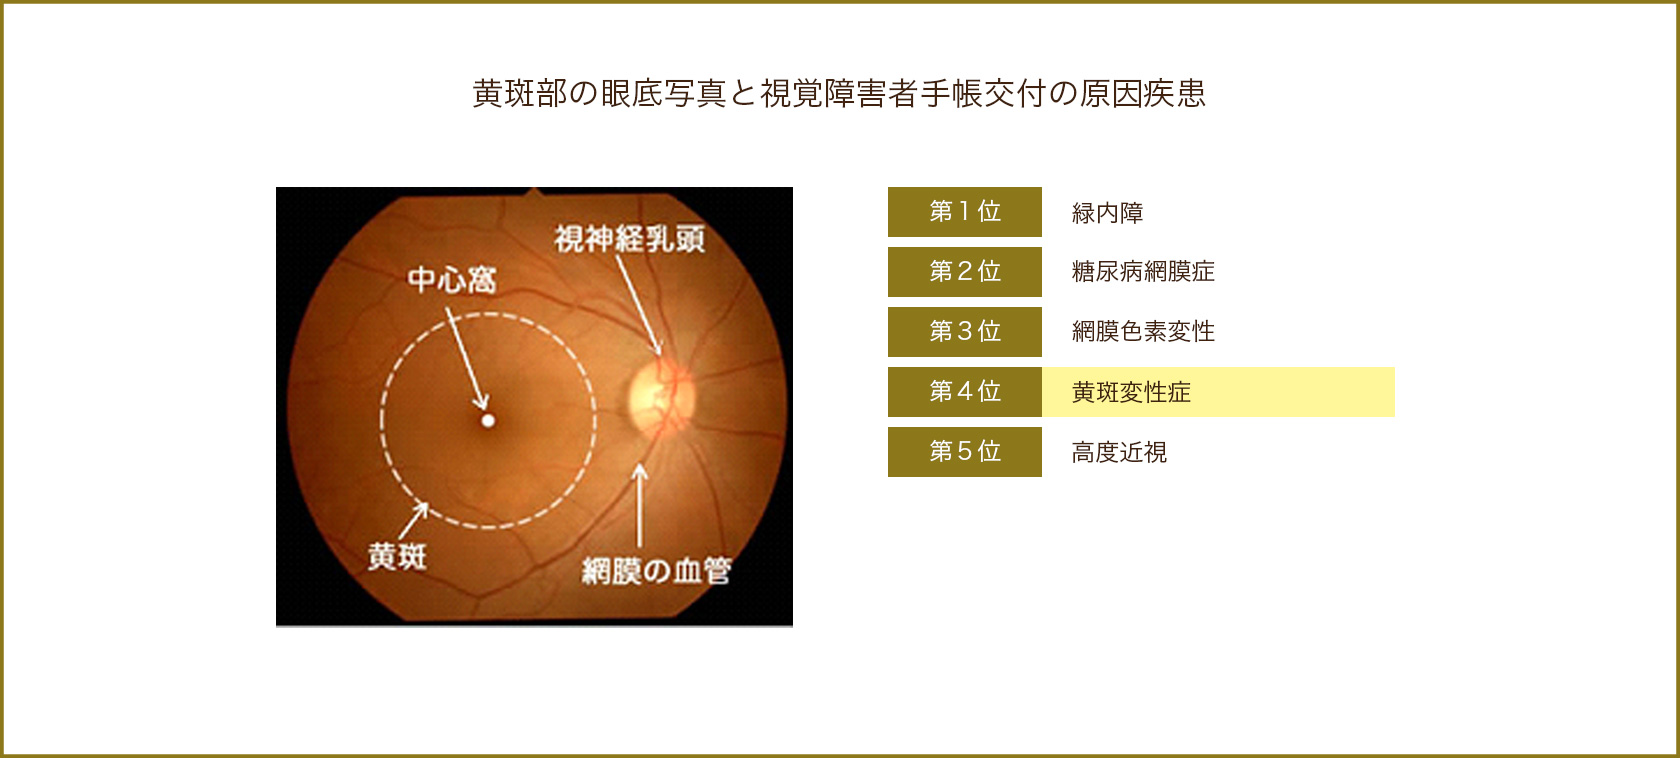 黄斑部の眼底写真と視覚障害者手帳交付の原因疾患